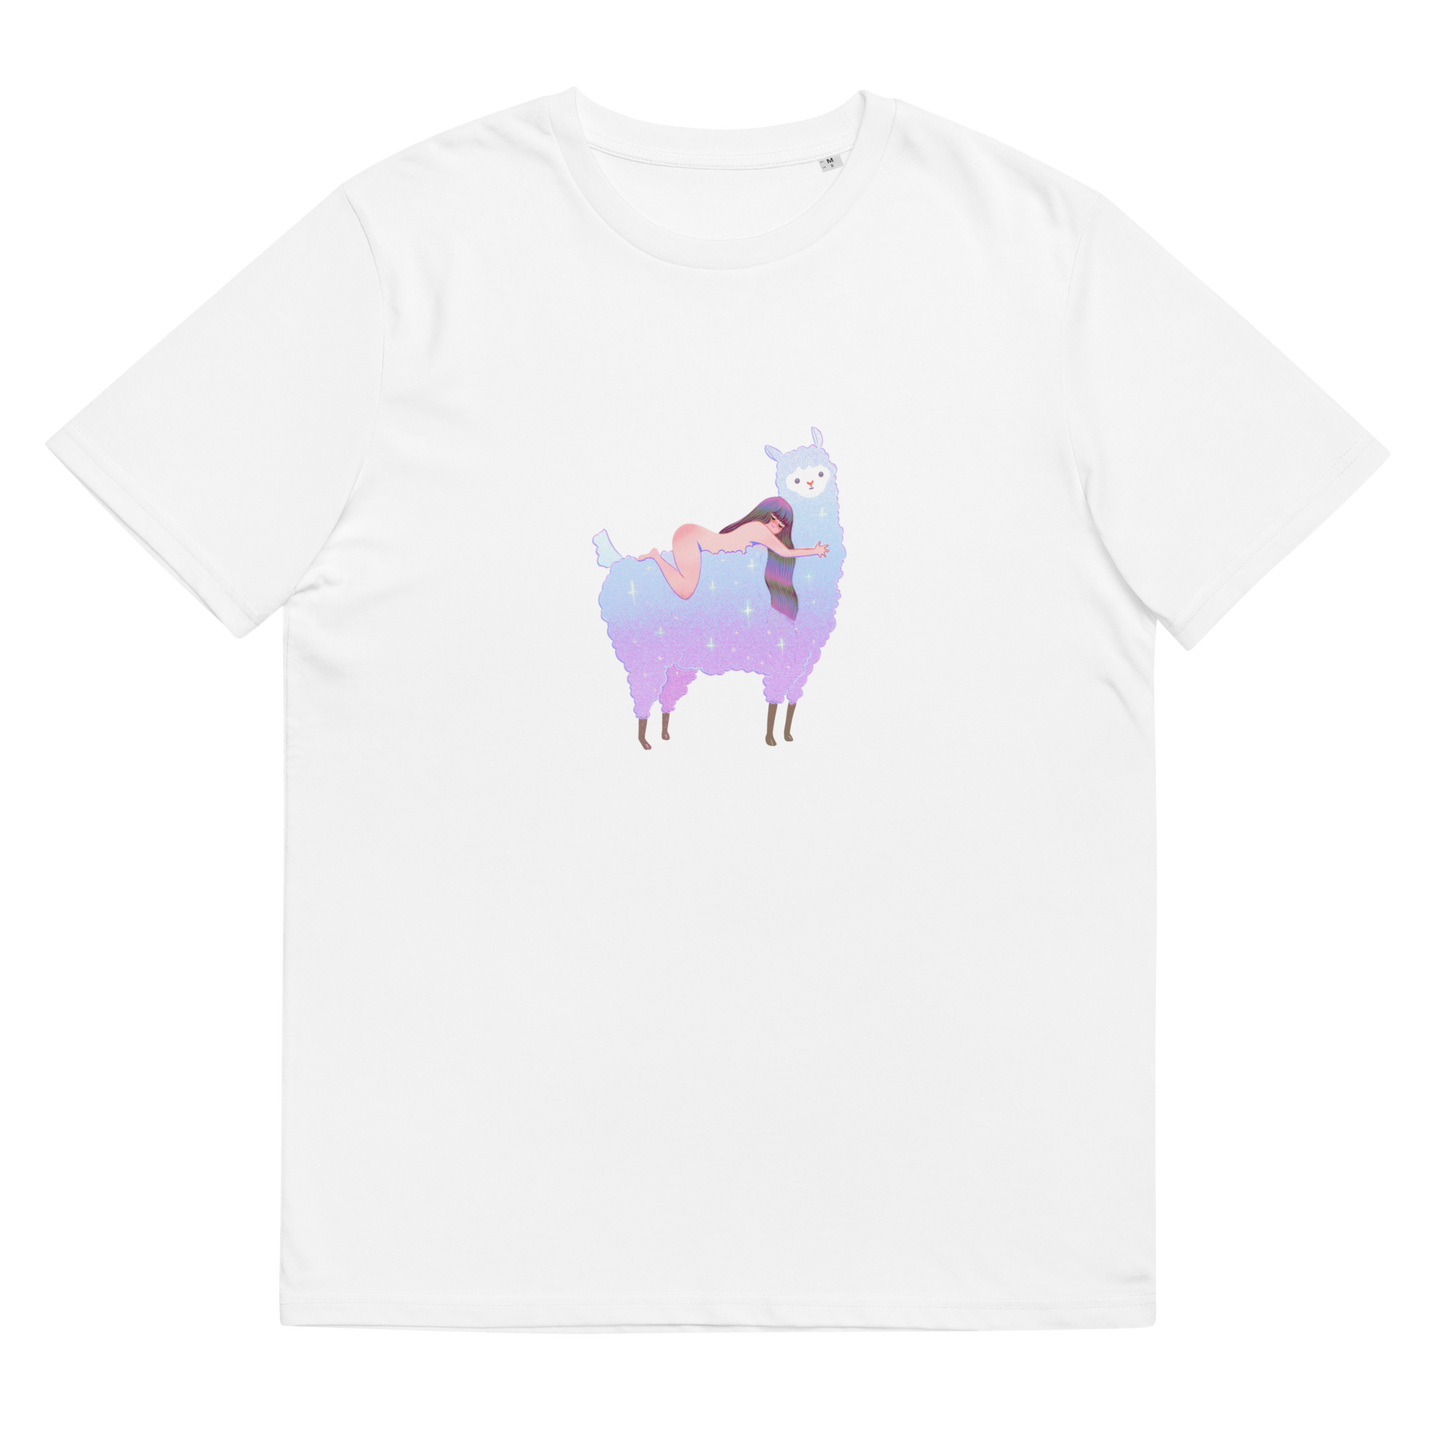 feat Jiangbrulant - Unisex organic cotton t-shirt